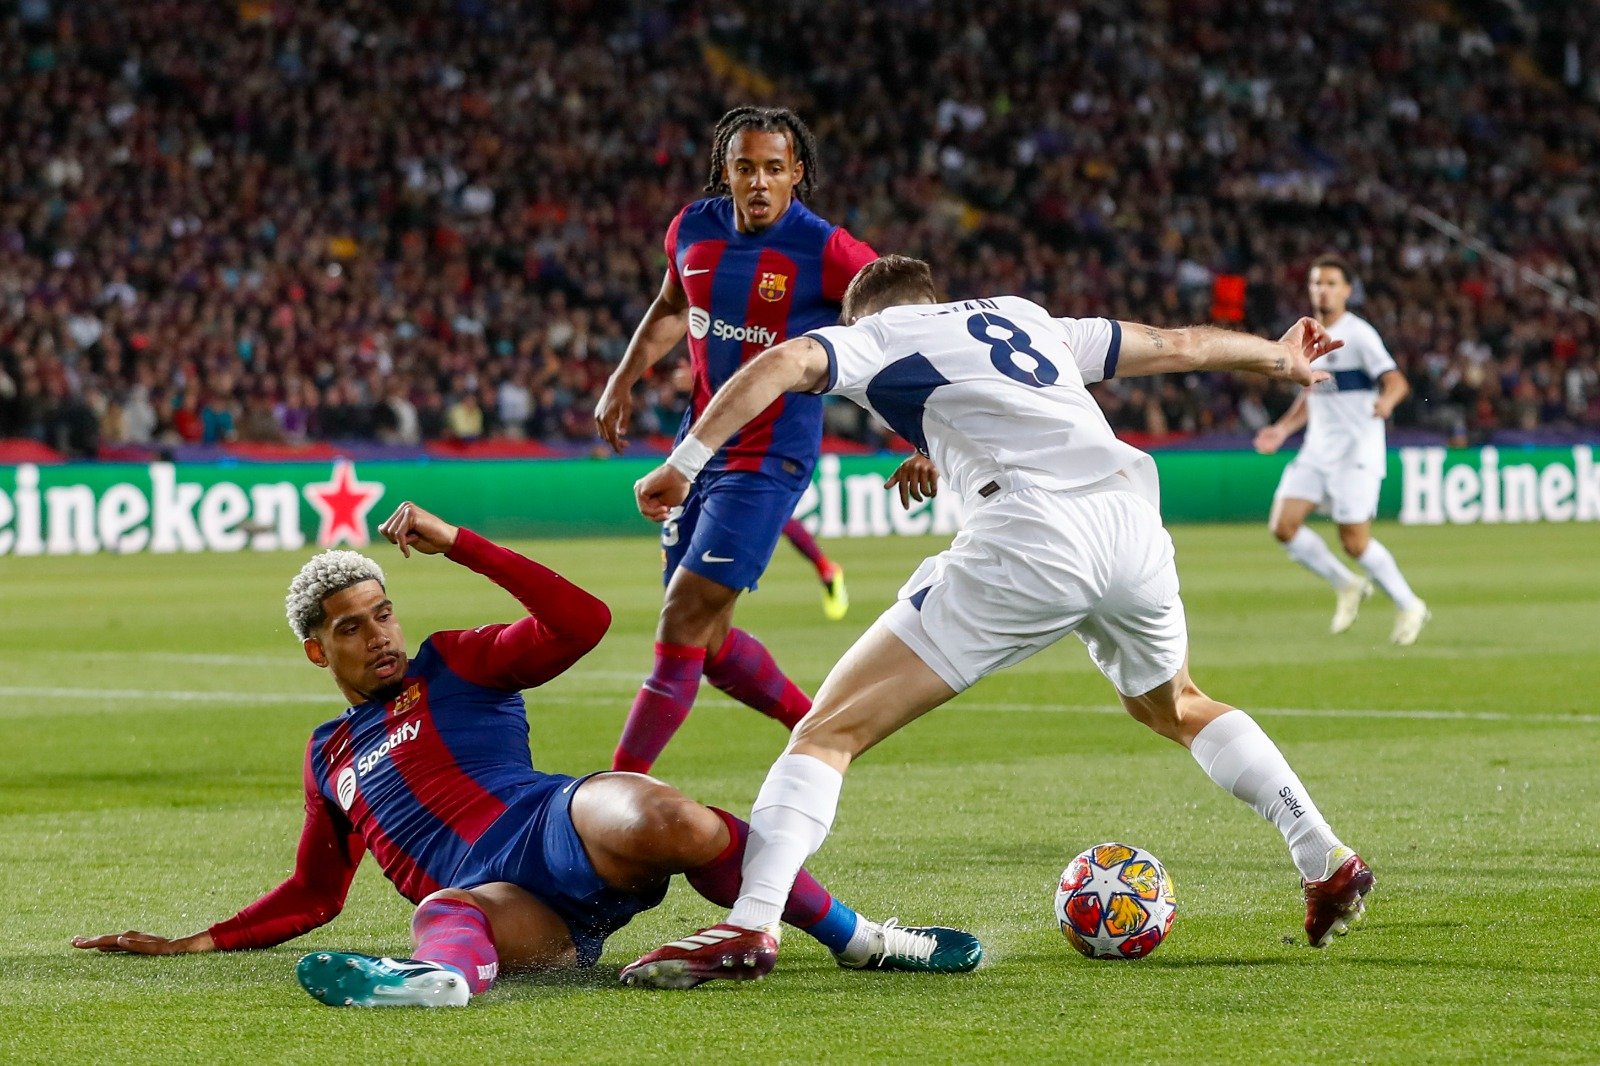 10-man Barcelona collapse to Champions League exit, Paris Saint-Germain into semi-finals